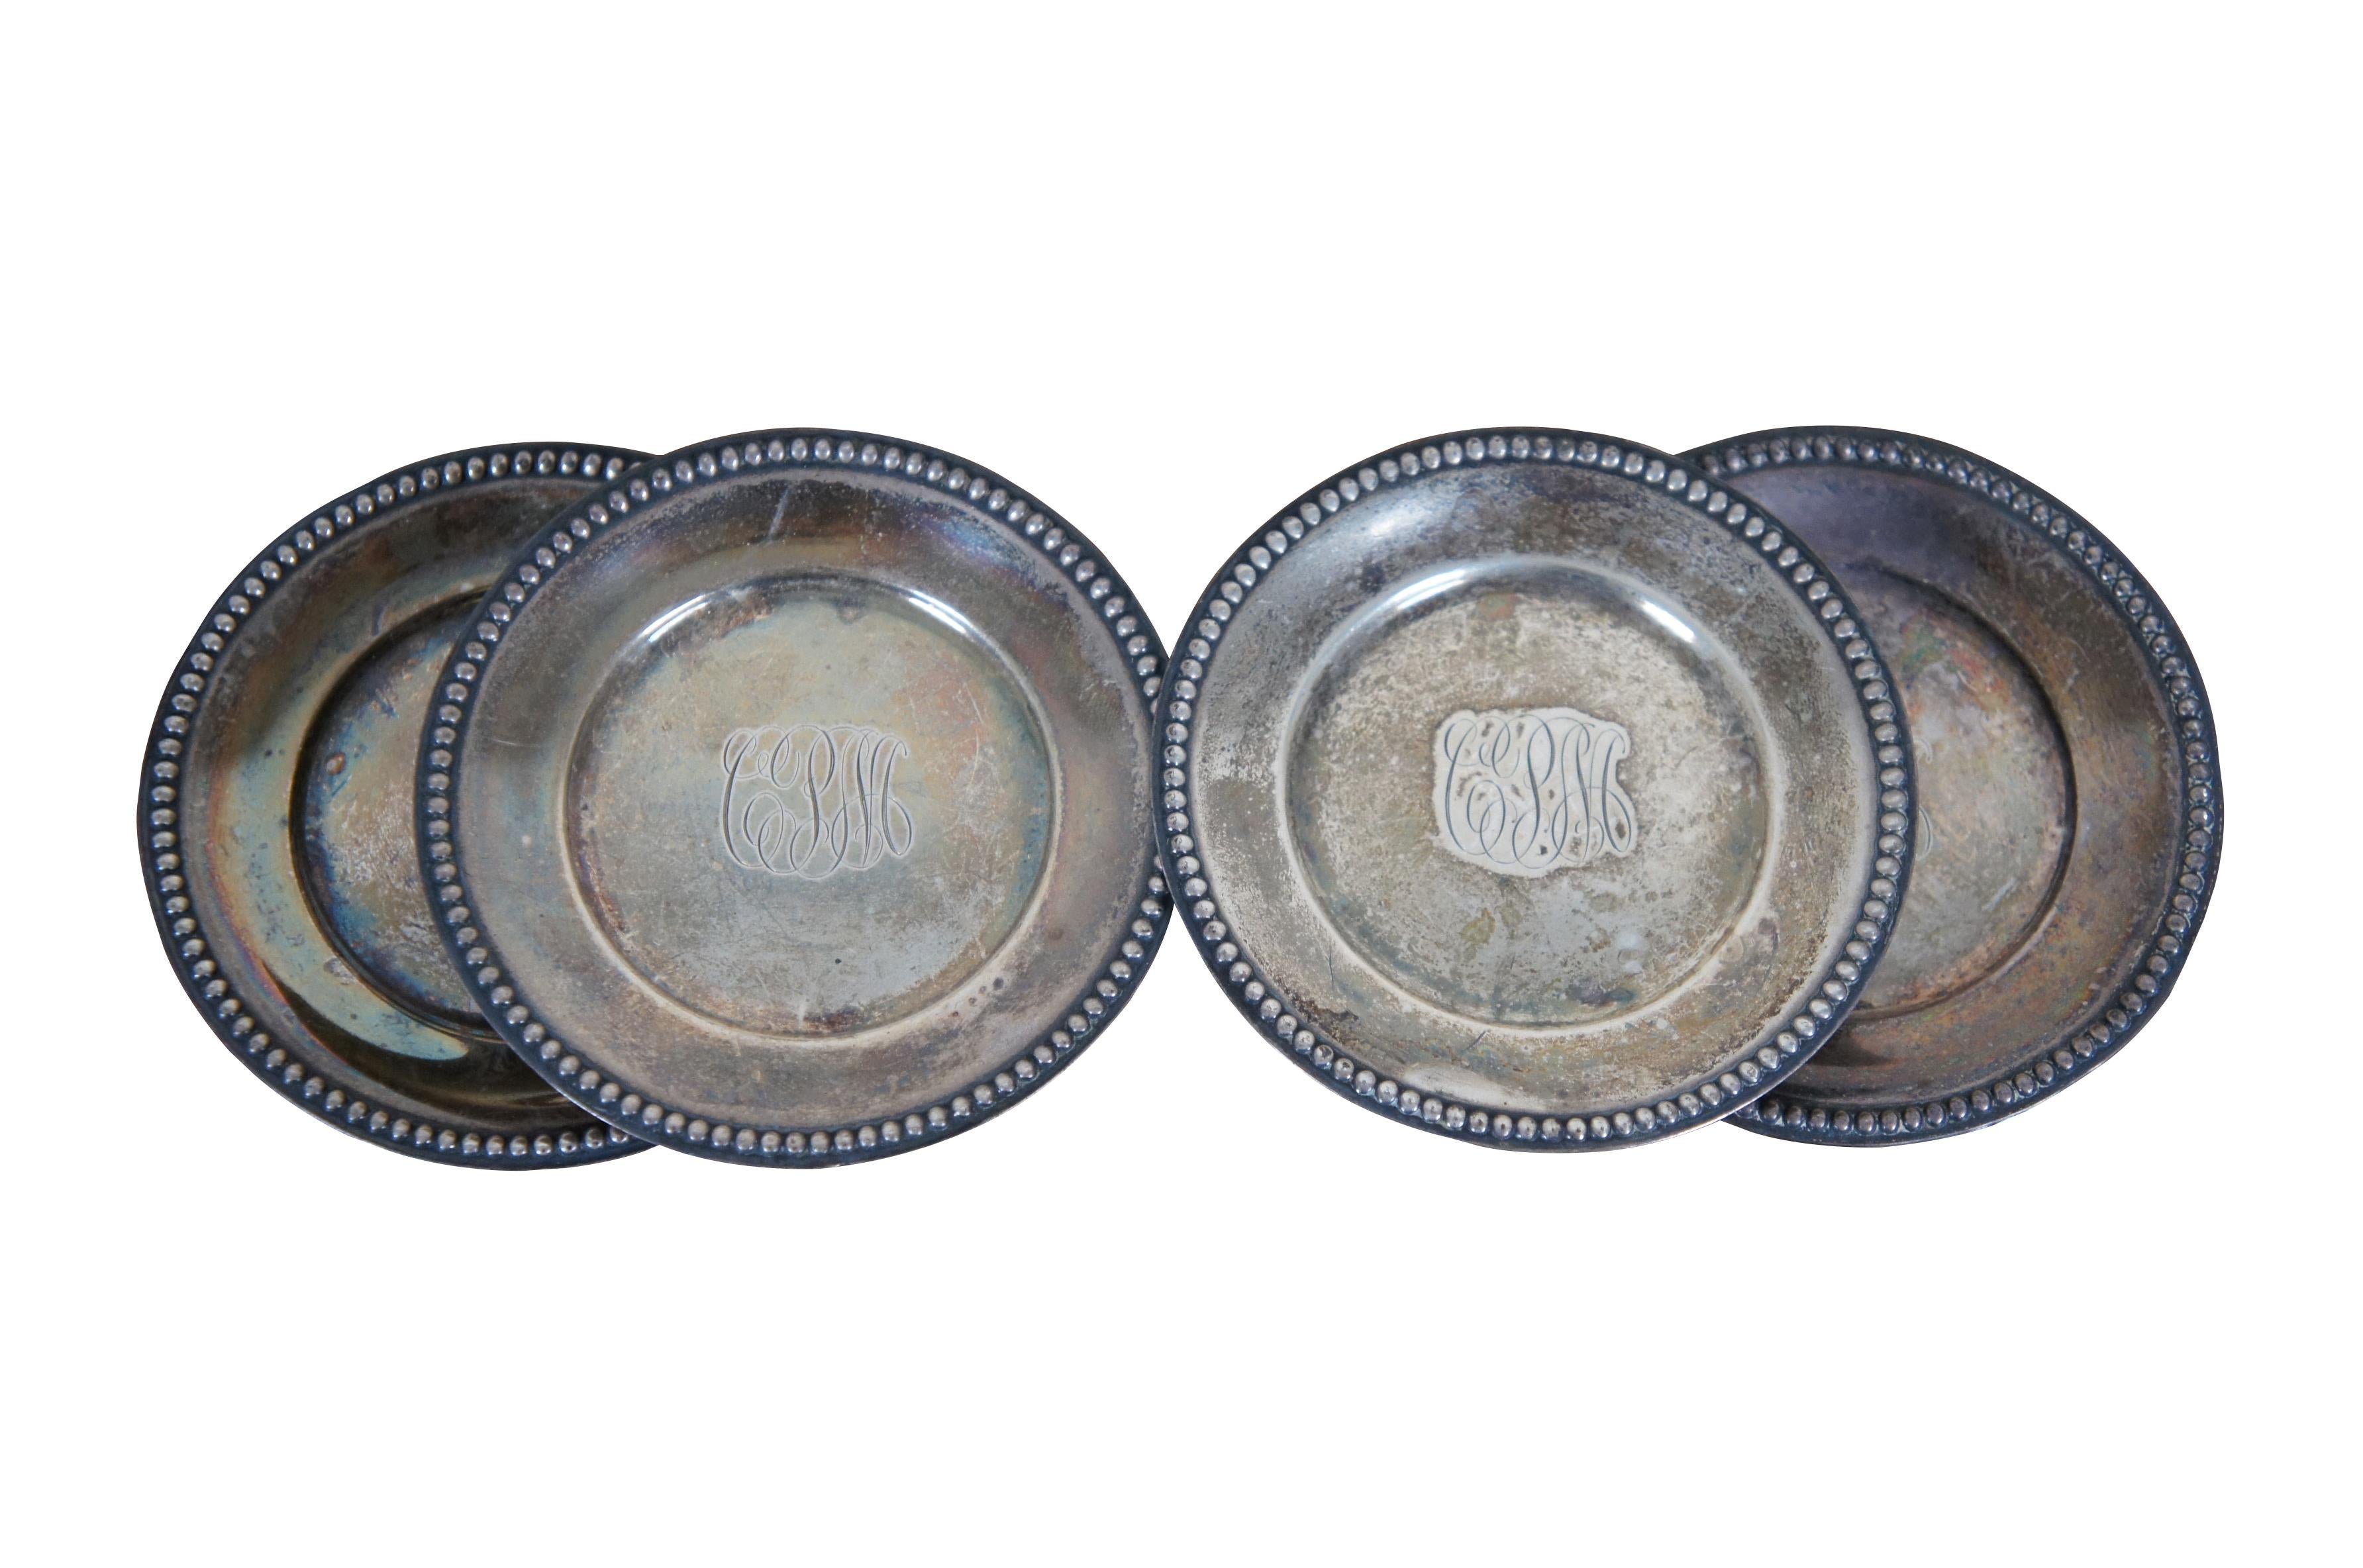 Ensemble de quatre plats à os/noix anciens en argent sterling de Whiting Manufacturing Co avec bord perlé, numéro d'article 5240. Monogrammé avec les initiales CPM.

